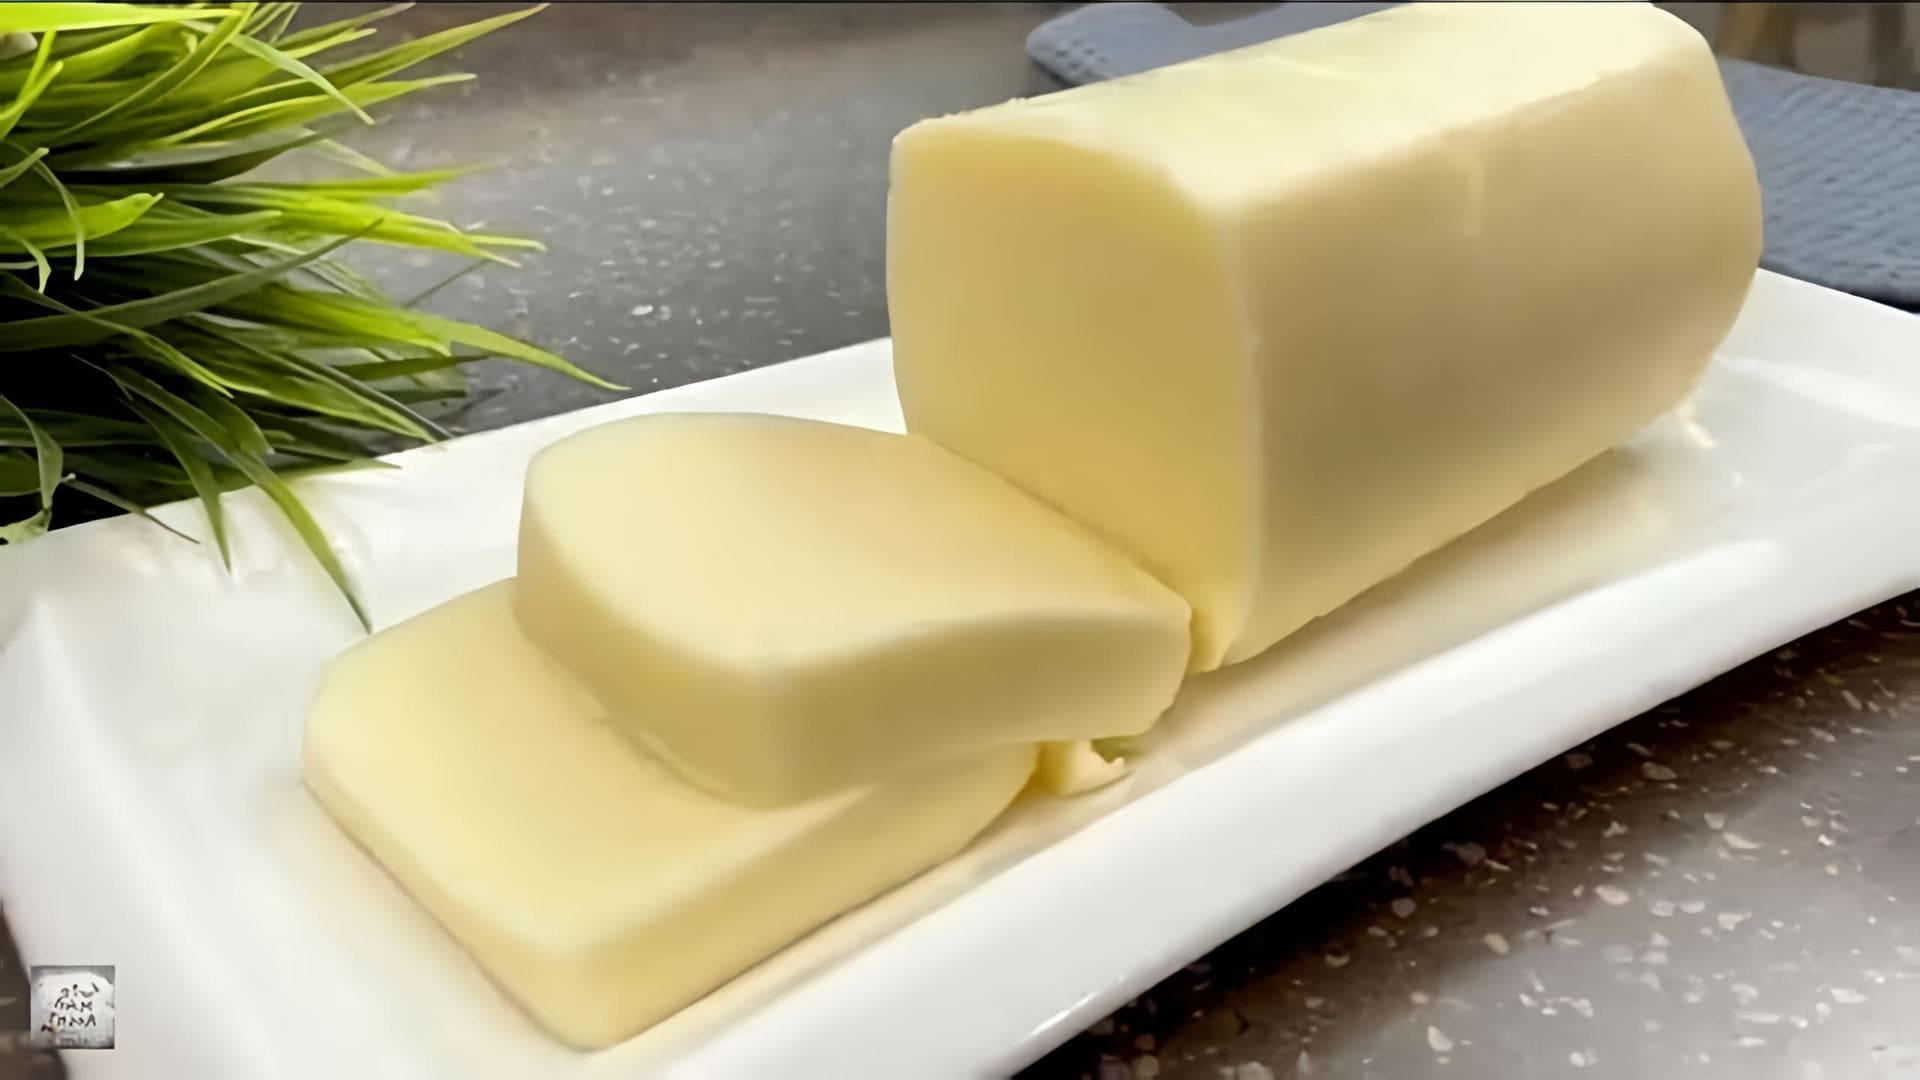 "Удивительный рецепт приготовления сыра чеддер из 1 литра молока" - так можно назвать видео-ролик, в котором рассказывается о том, как приготовить 1,5 кг сыра чеддер из 1 литра молока